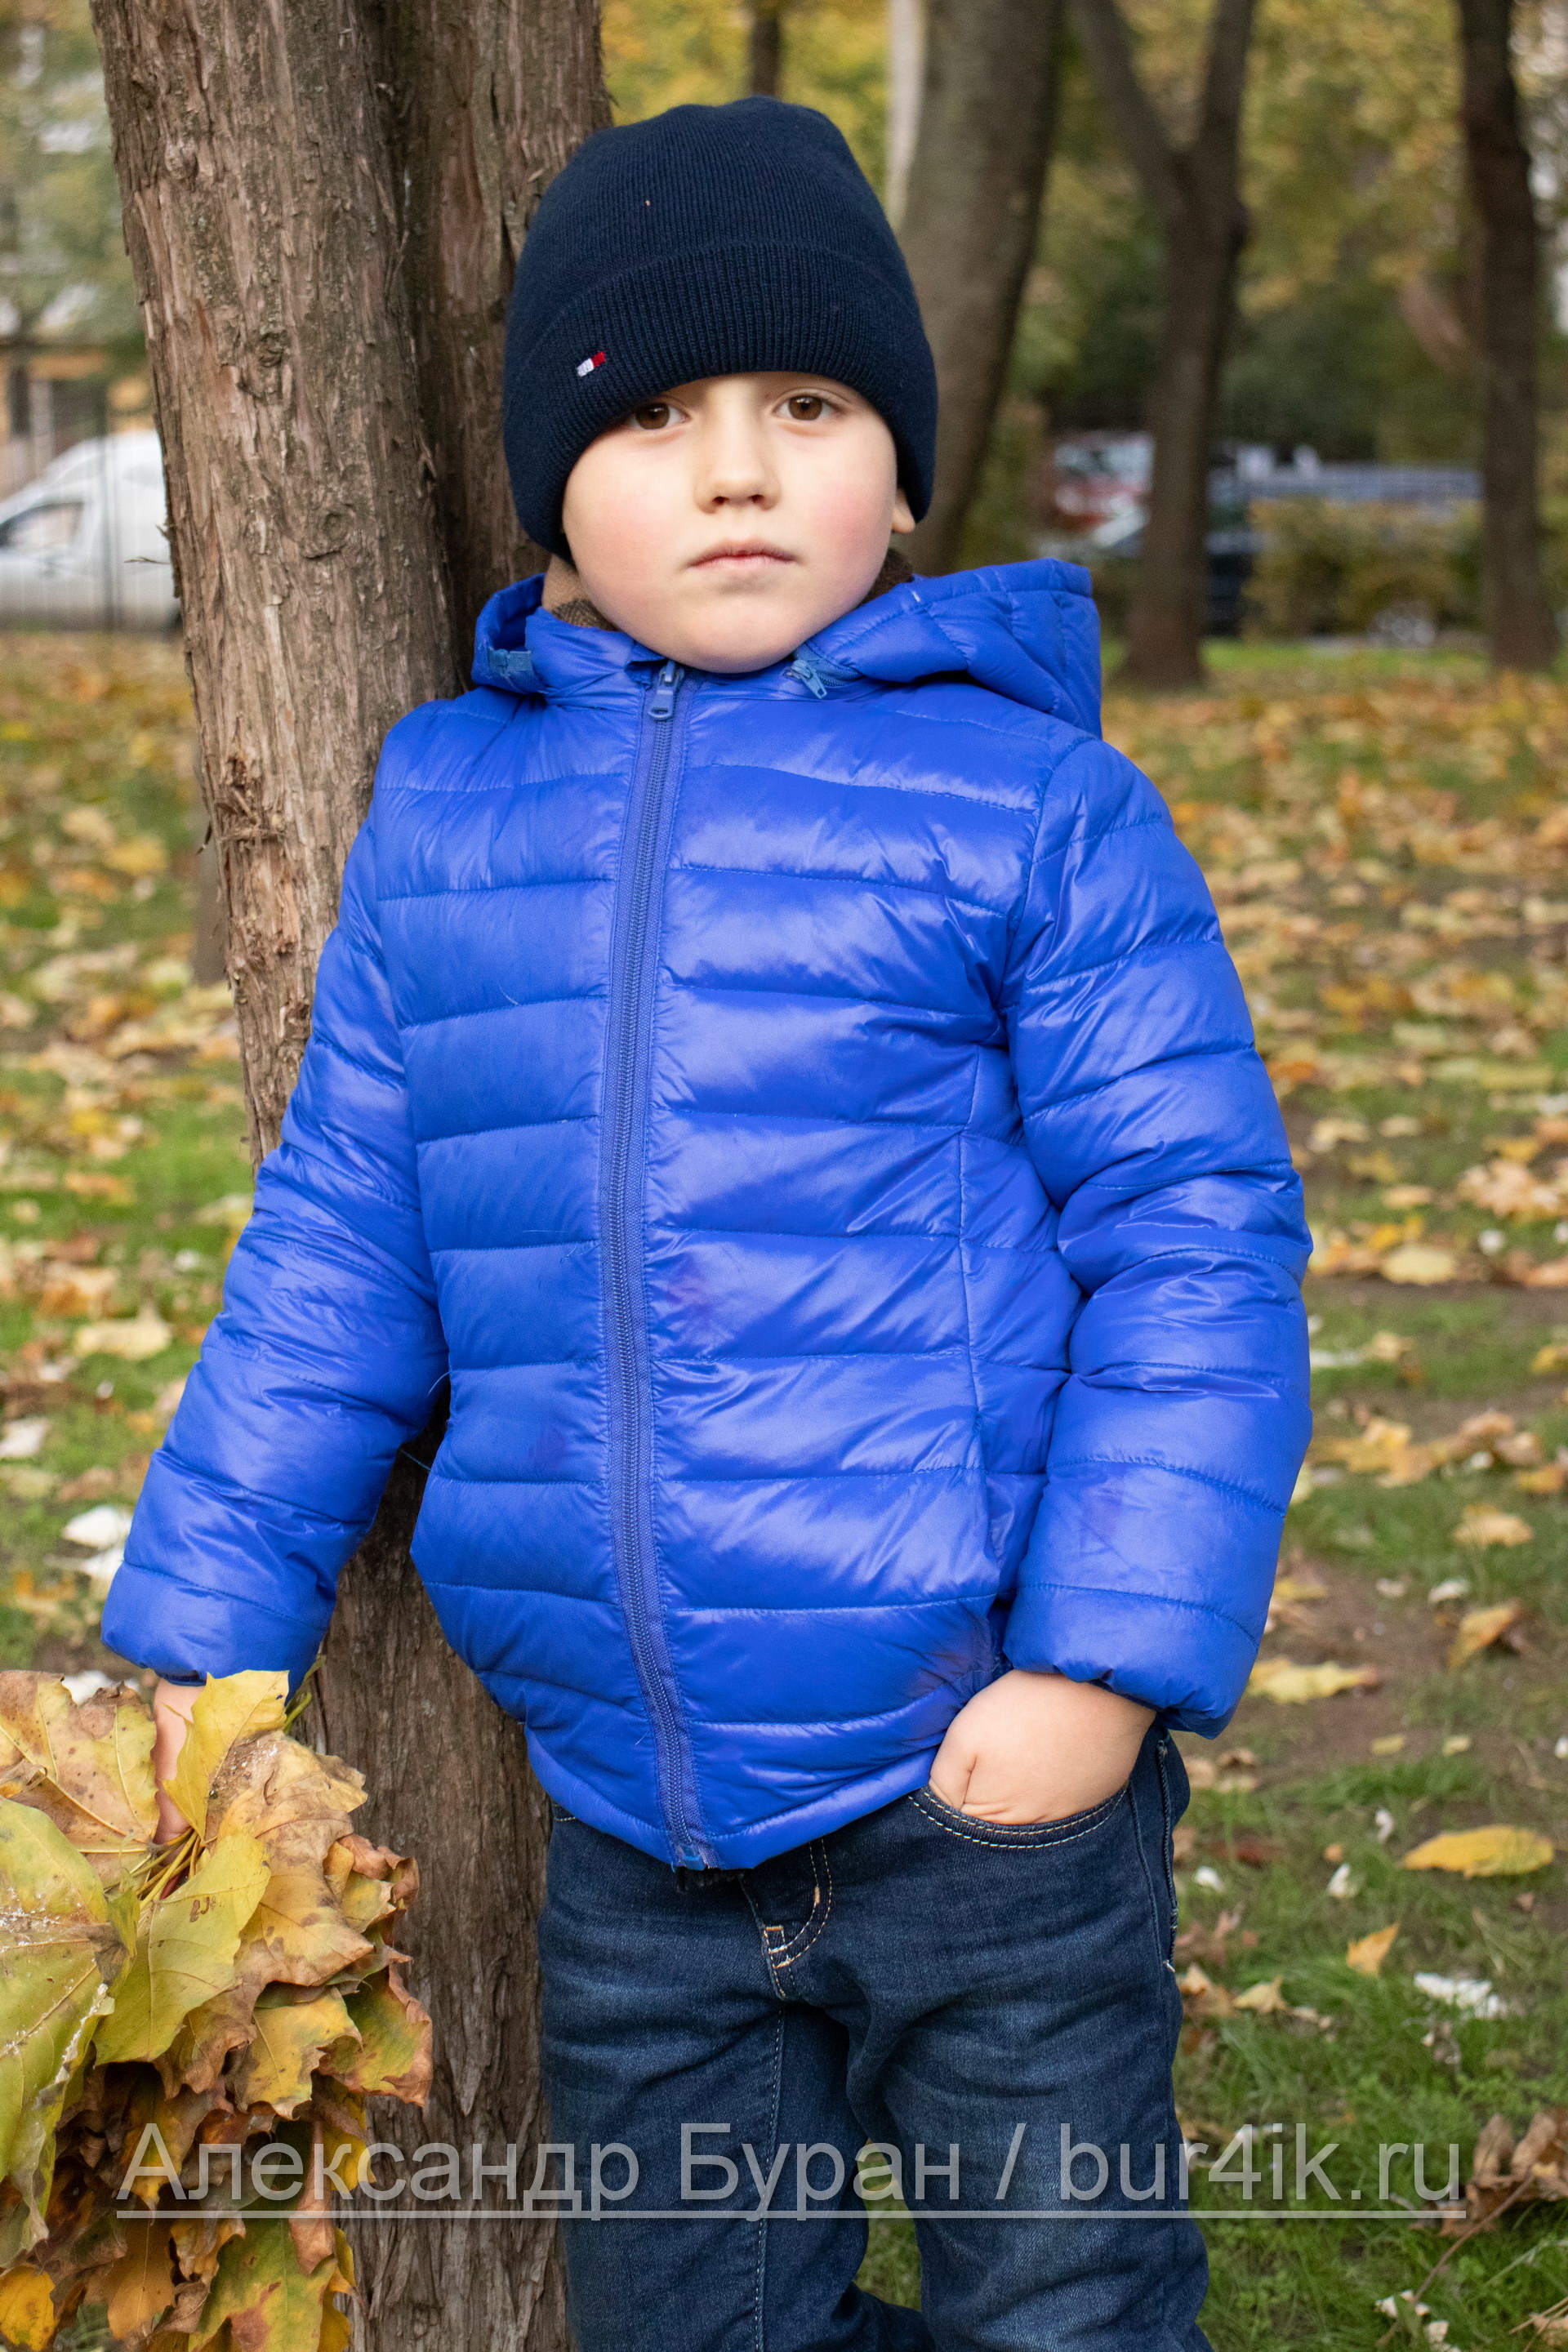 Мальчик в синем поле стоит возле дерева в осеннем парке